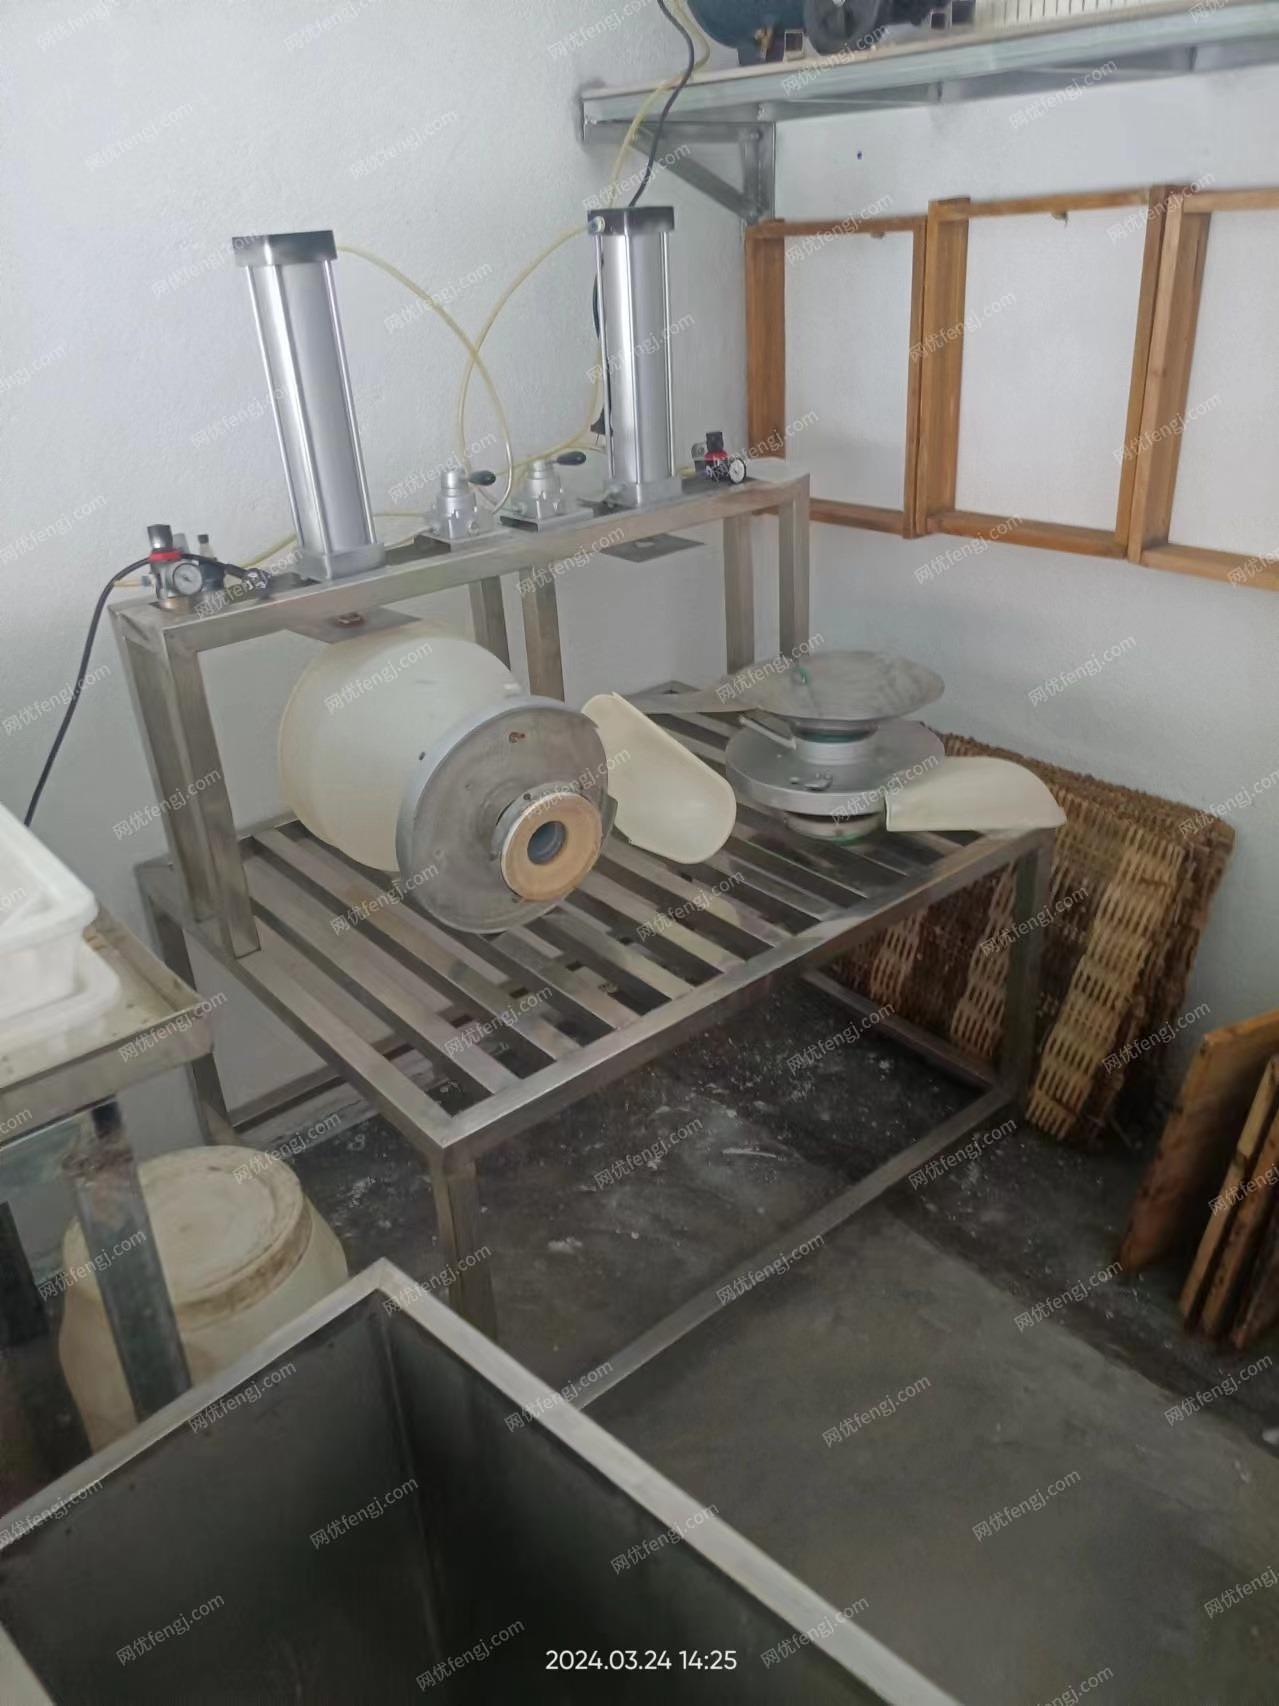 南宁地区闲置处理豆腐设备1套、在广西南宁、详见图